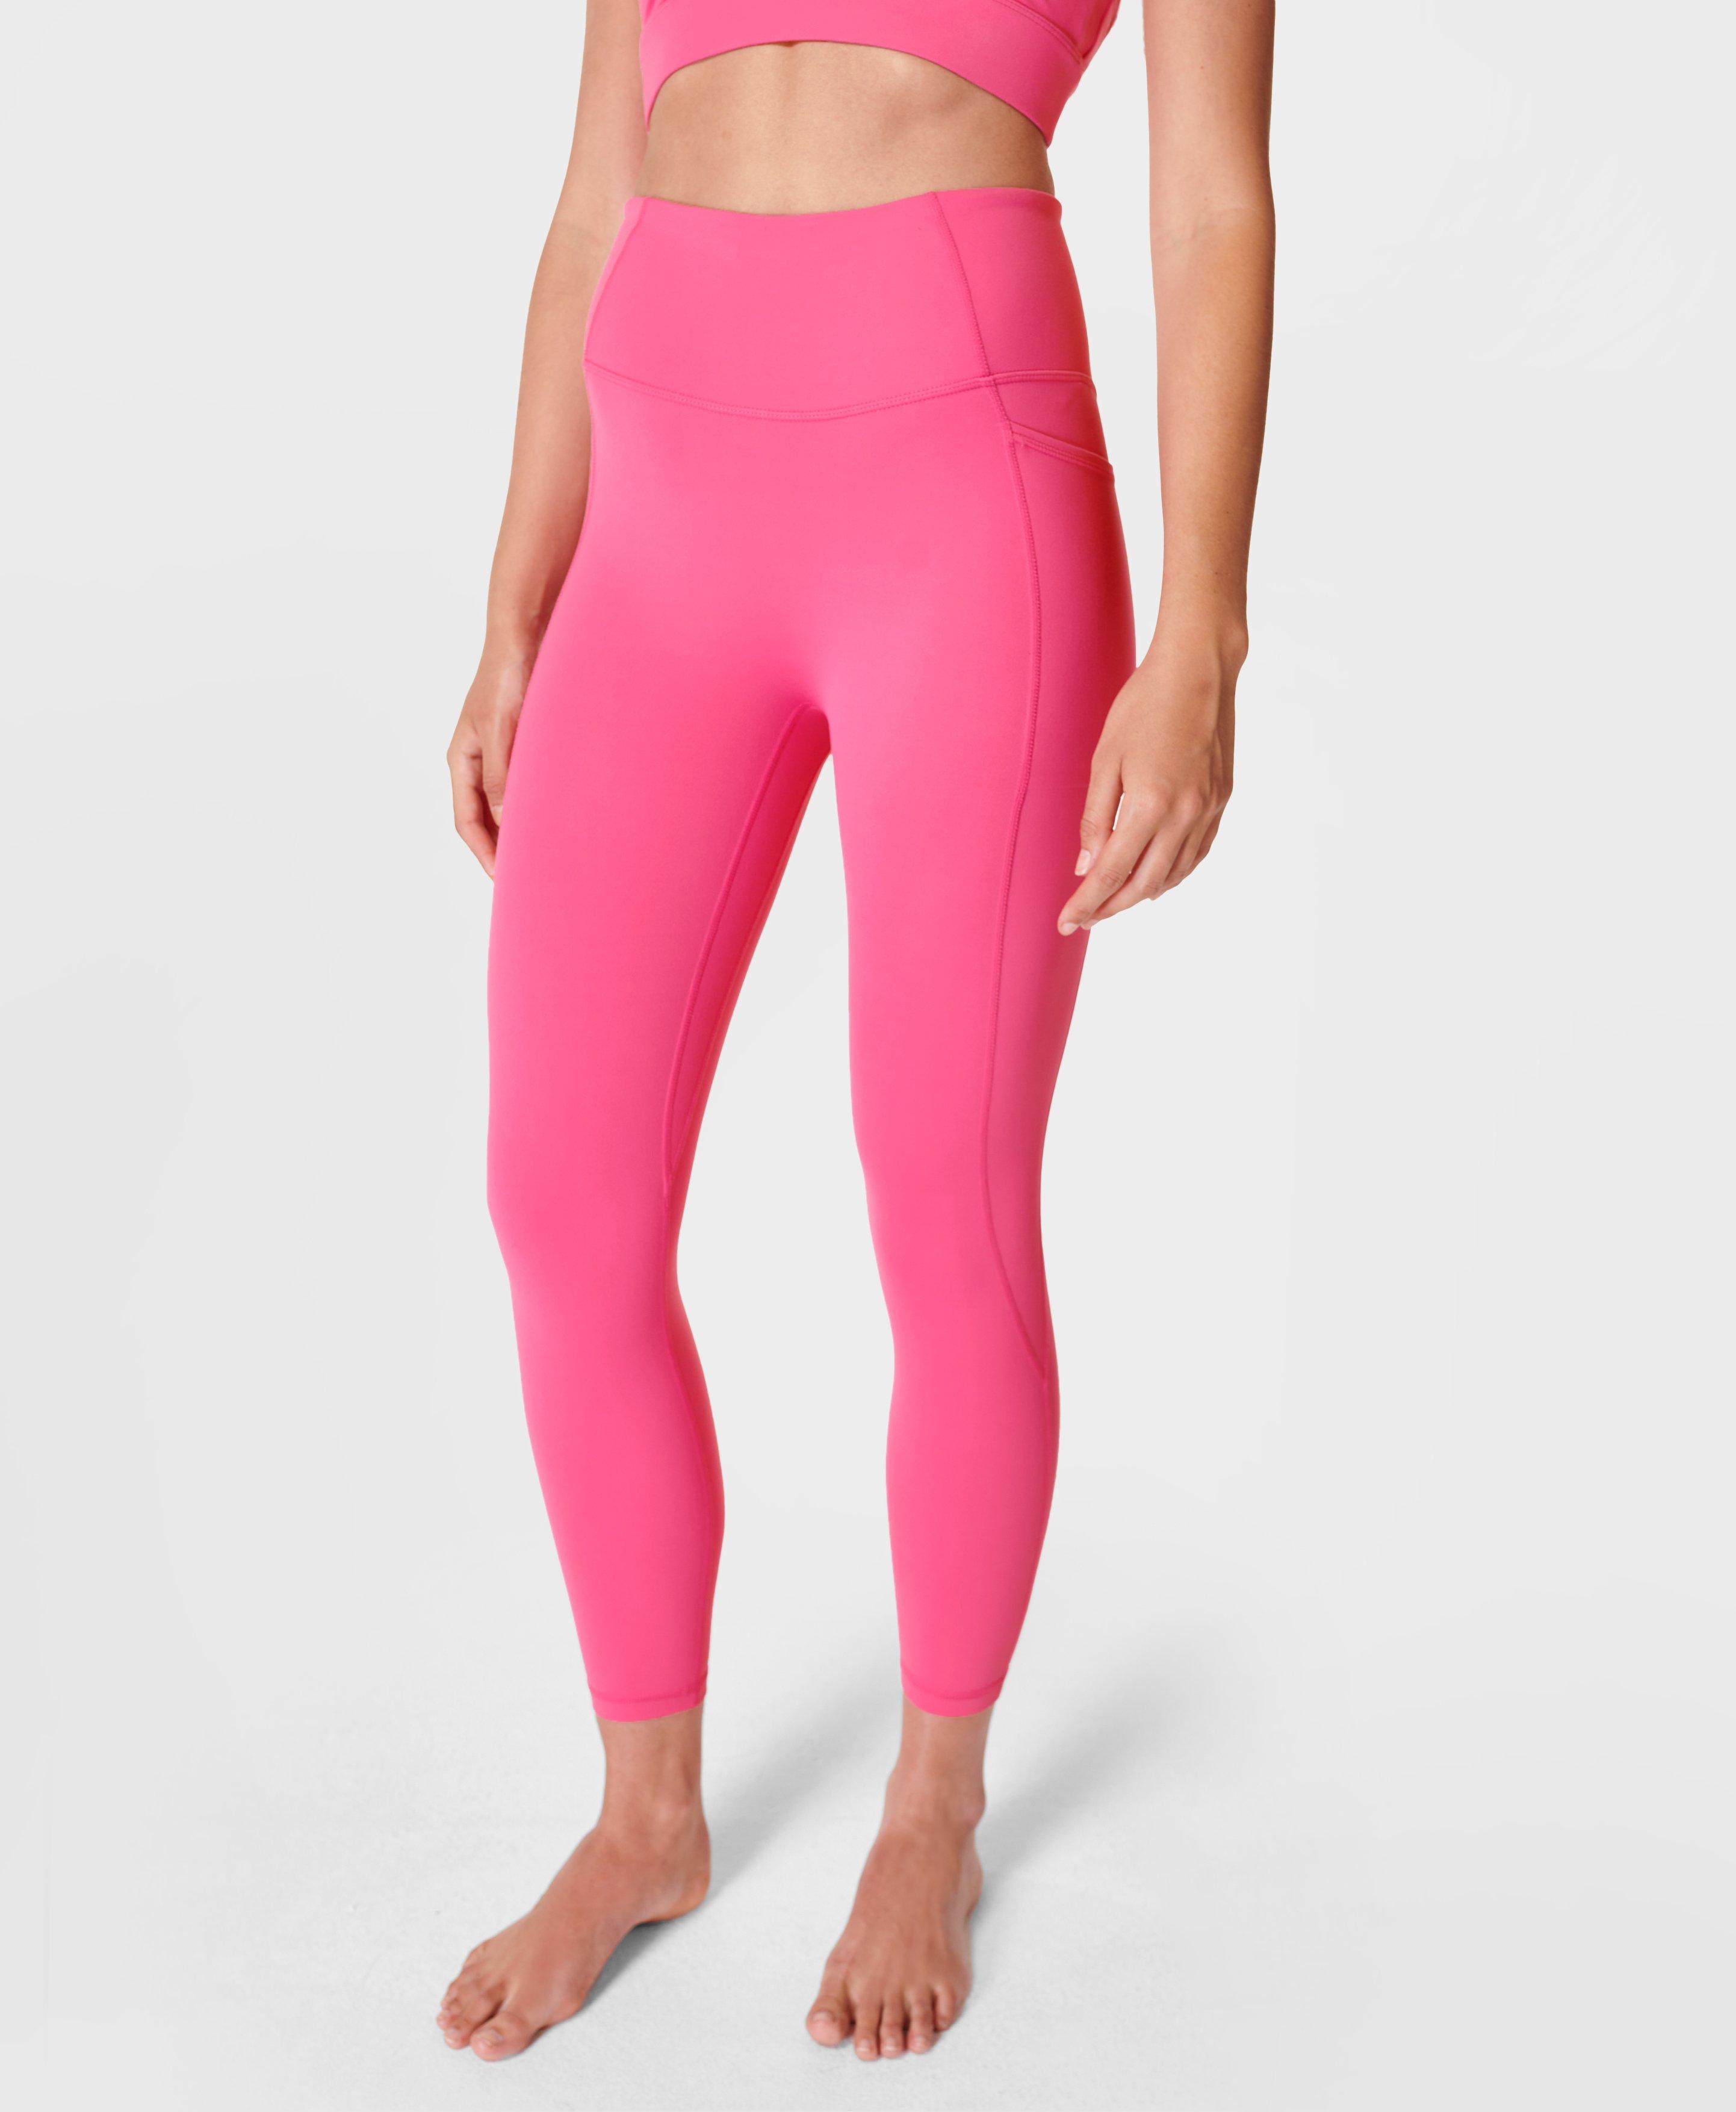 Agile Leggings - PinkS  Pink leggings, Athleisure wear